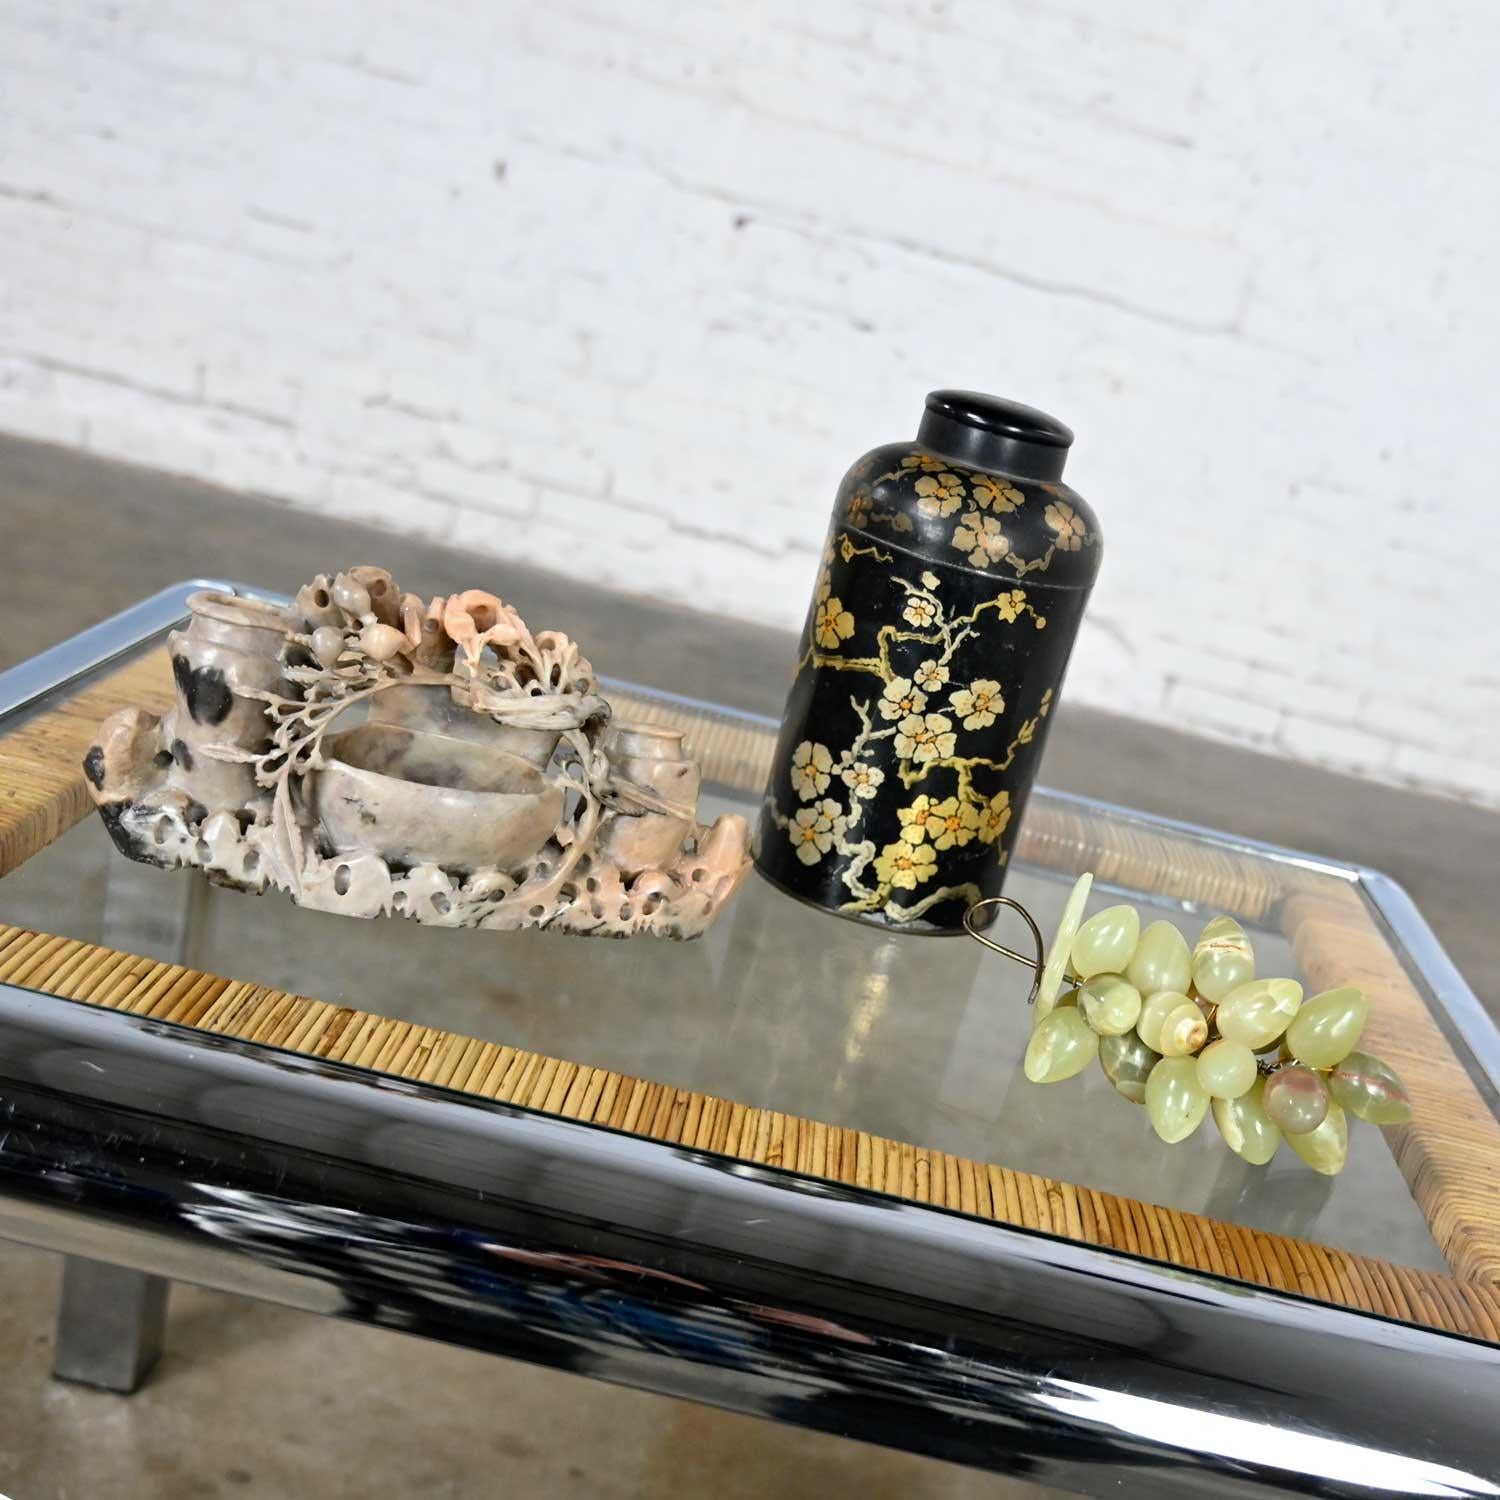 Jolie vignette de chinoiserie comprenant une sculpture en pierre de savon, une boîte à thé en étain noir comprenant des détails floraux dorés peints à la main, un couvercle et une grappe de raisins décoratifs en pierre de couleur jade clair. Très